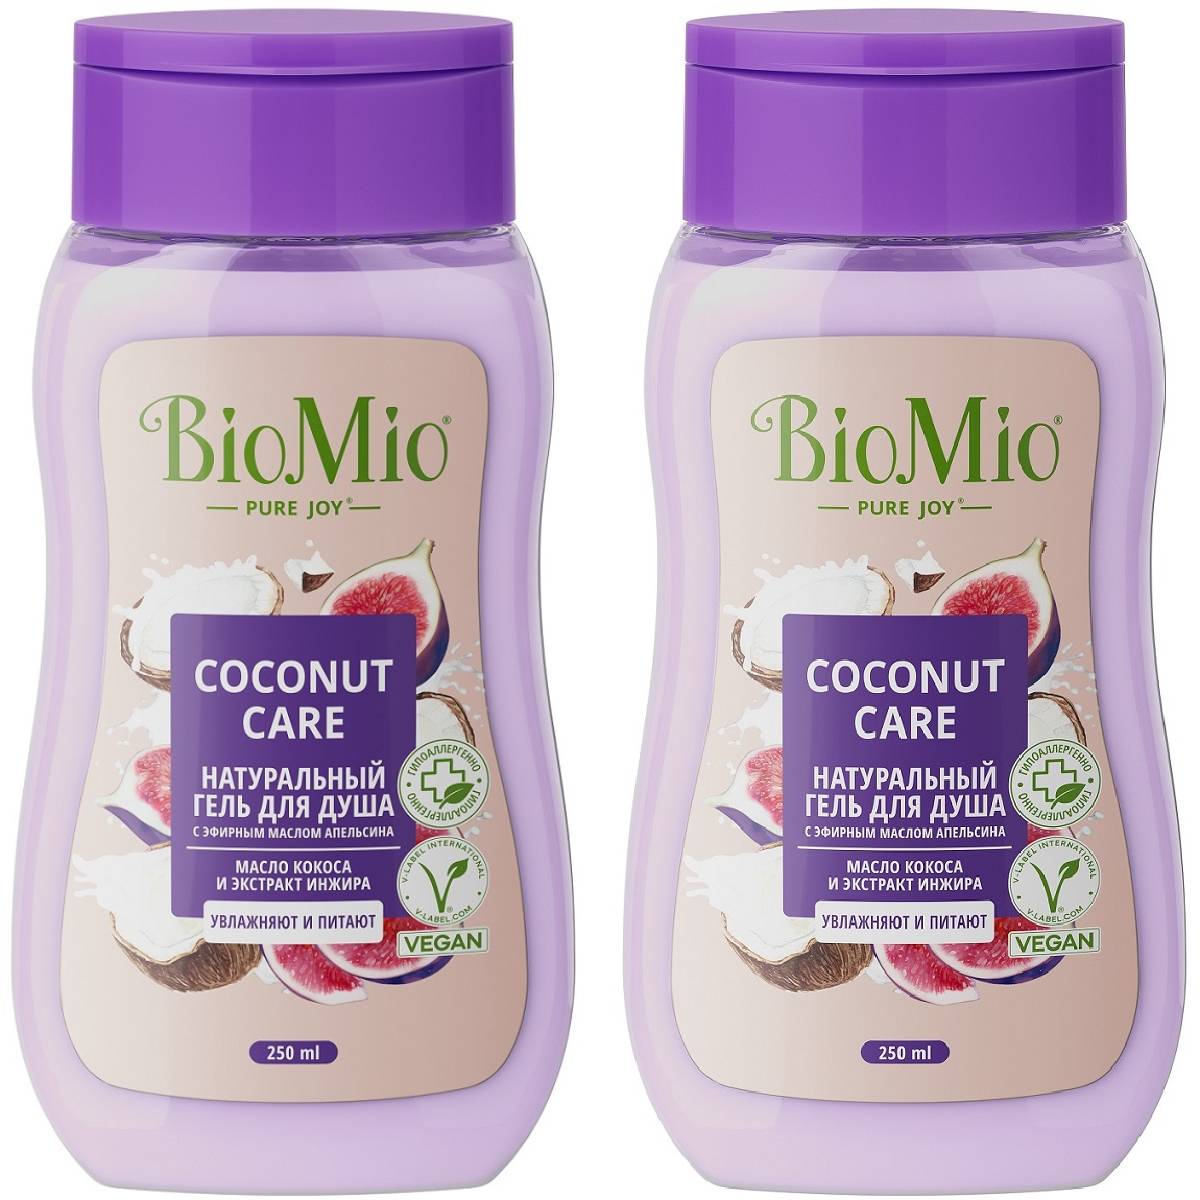 BioMio Biomio Гель для душа с экстрактом инжира и маслом кокоса Coconut Care для всей семьи 14+, 2 х 250 мл (BioMio, Для ванны и душа)